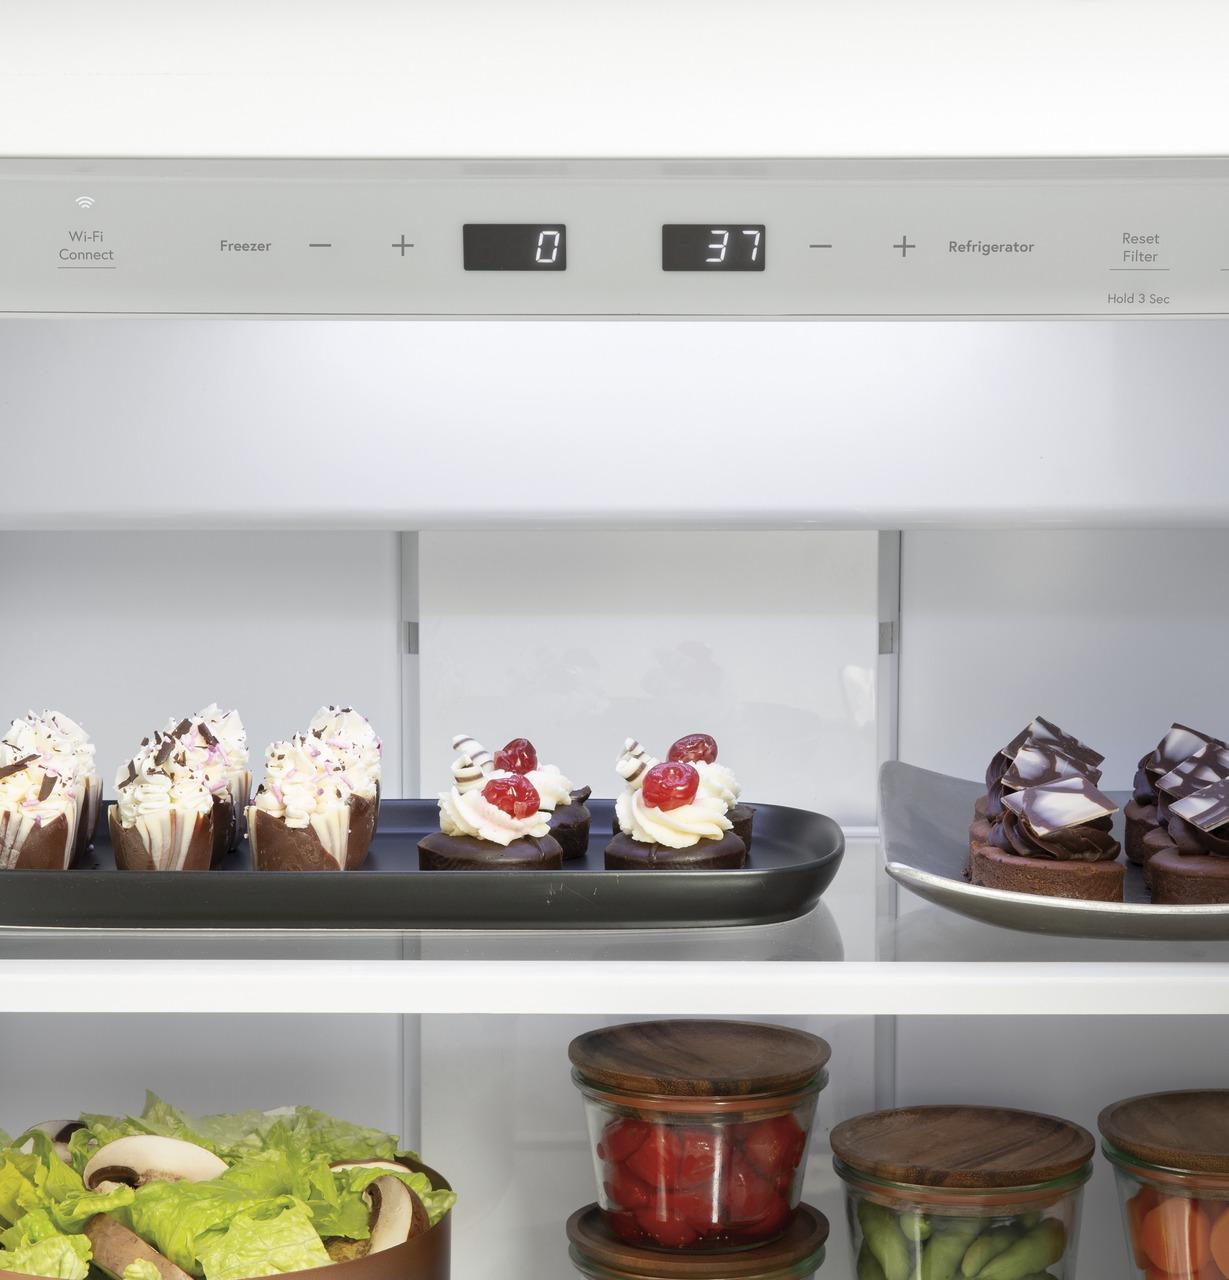 Caf(eback)™ 42" Smart Built-In Side-by-Side Refrigerator